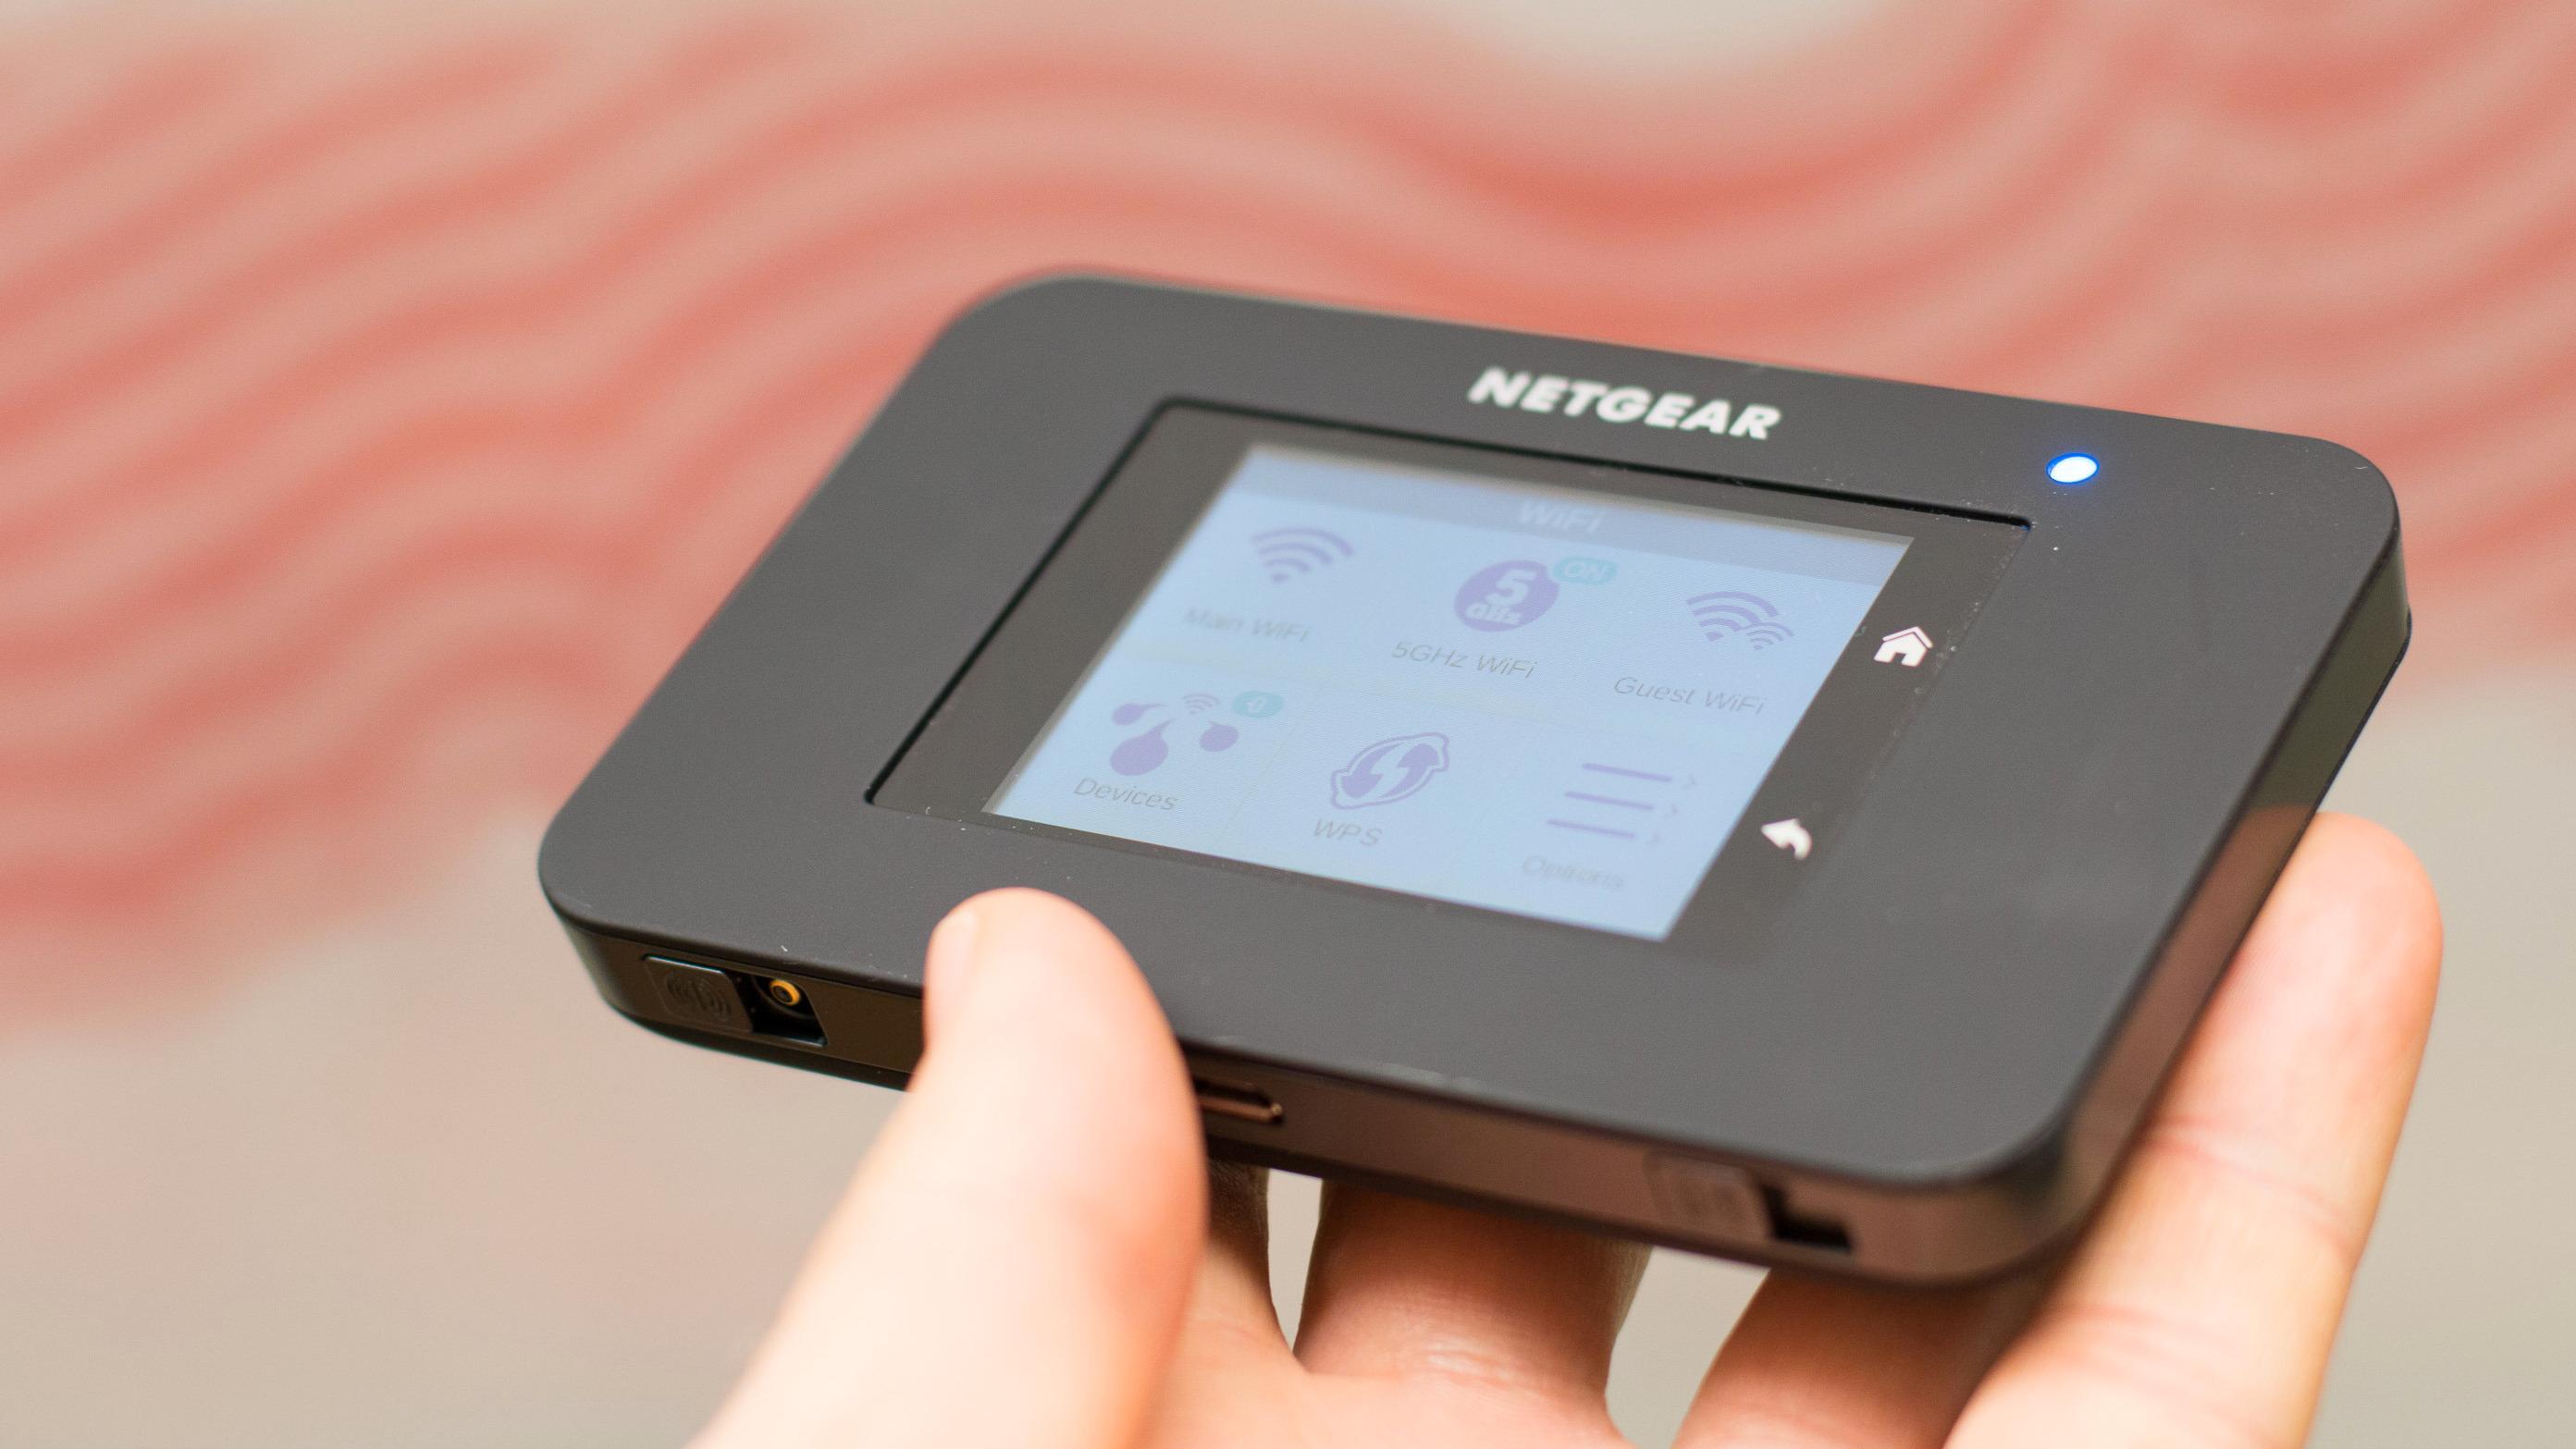 Er Netgear AirCard 790 den råeste ruteren for mobilt bredbånd?